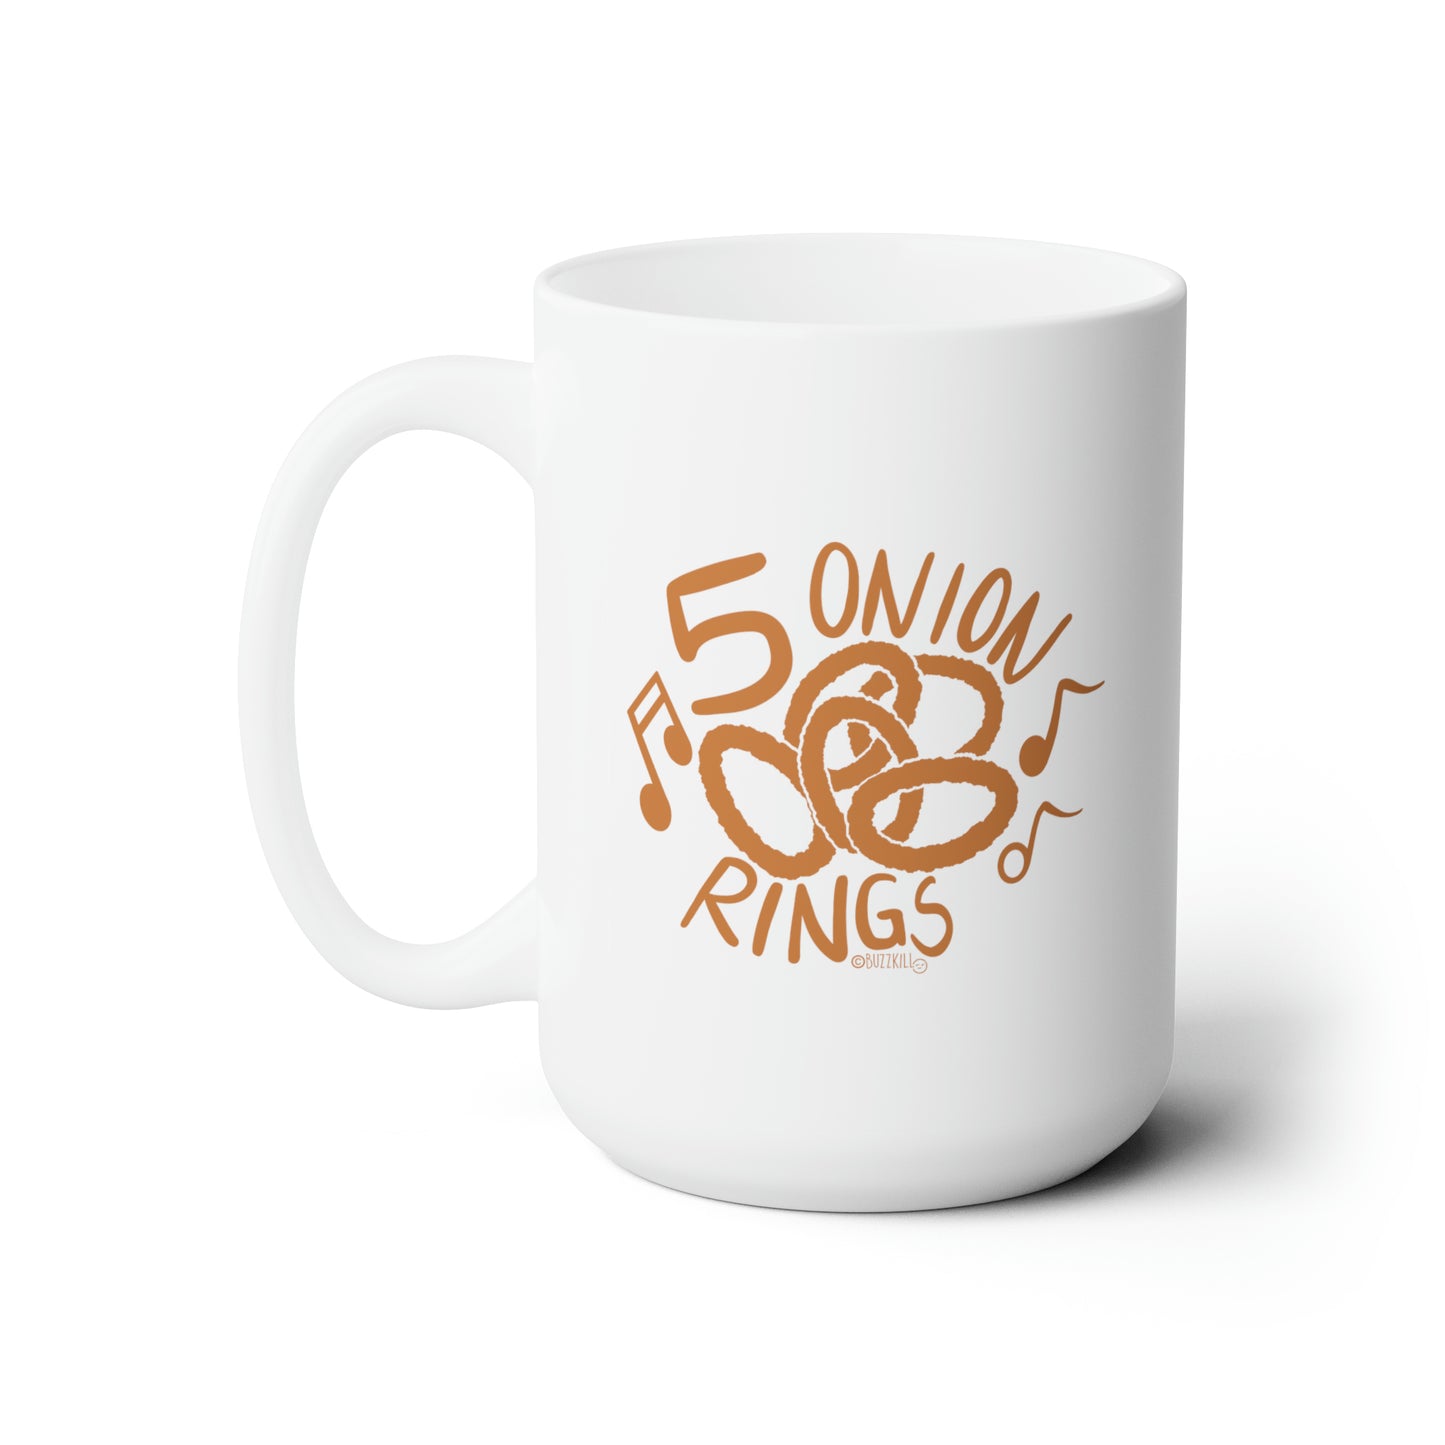 5 Onion Rings - Ceramic Mug 15oz